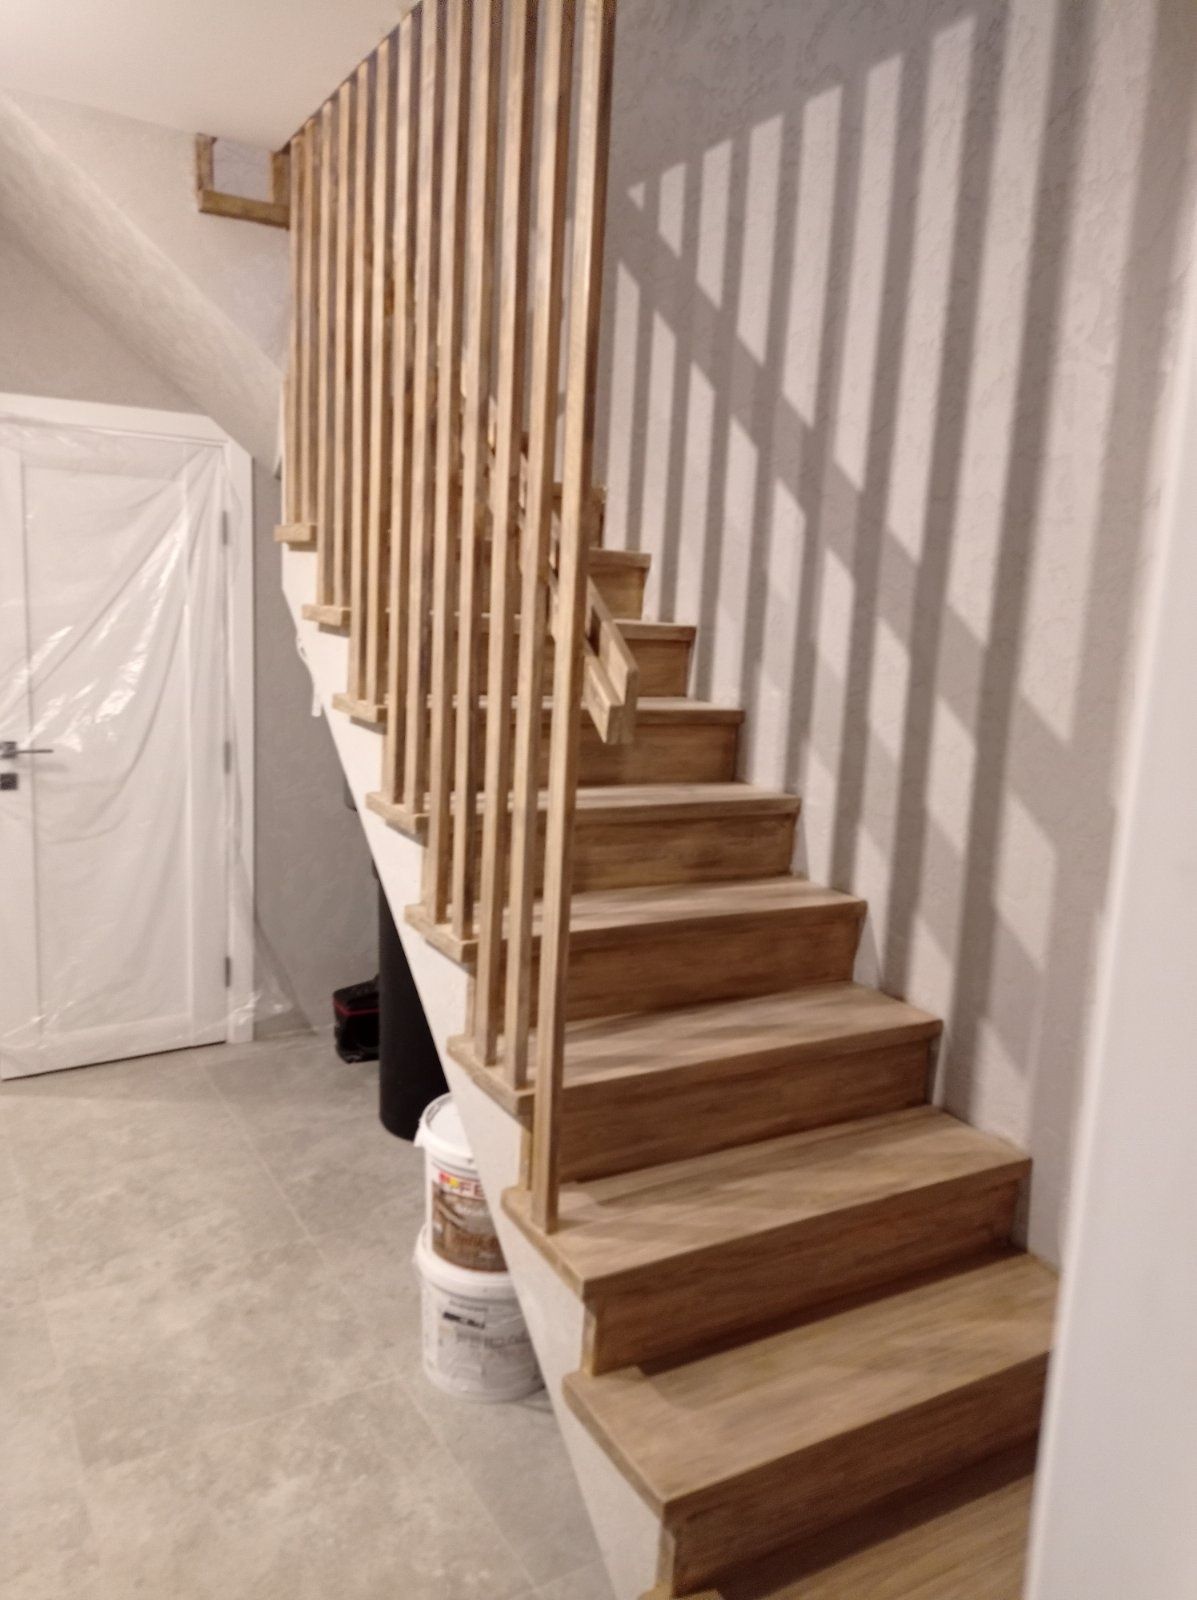 Изготовление и монтаж деревяных лестниц в короткий срок